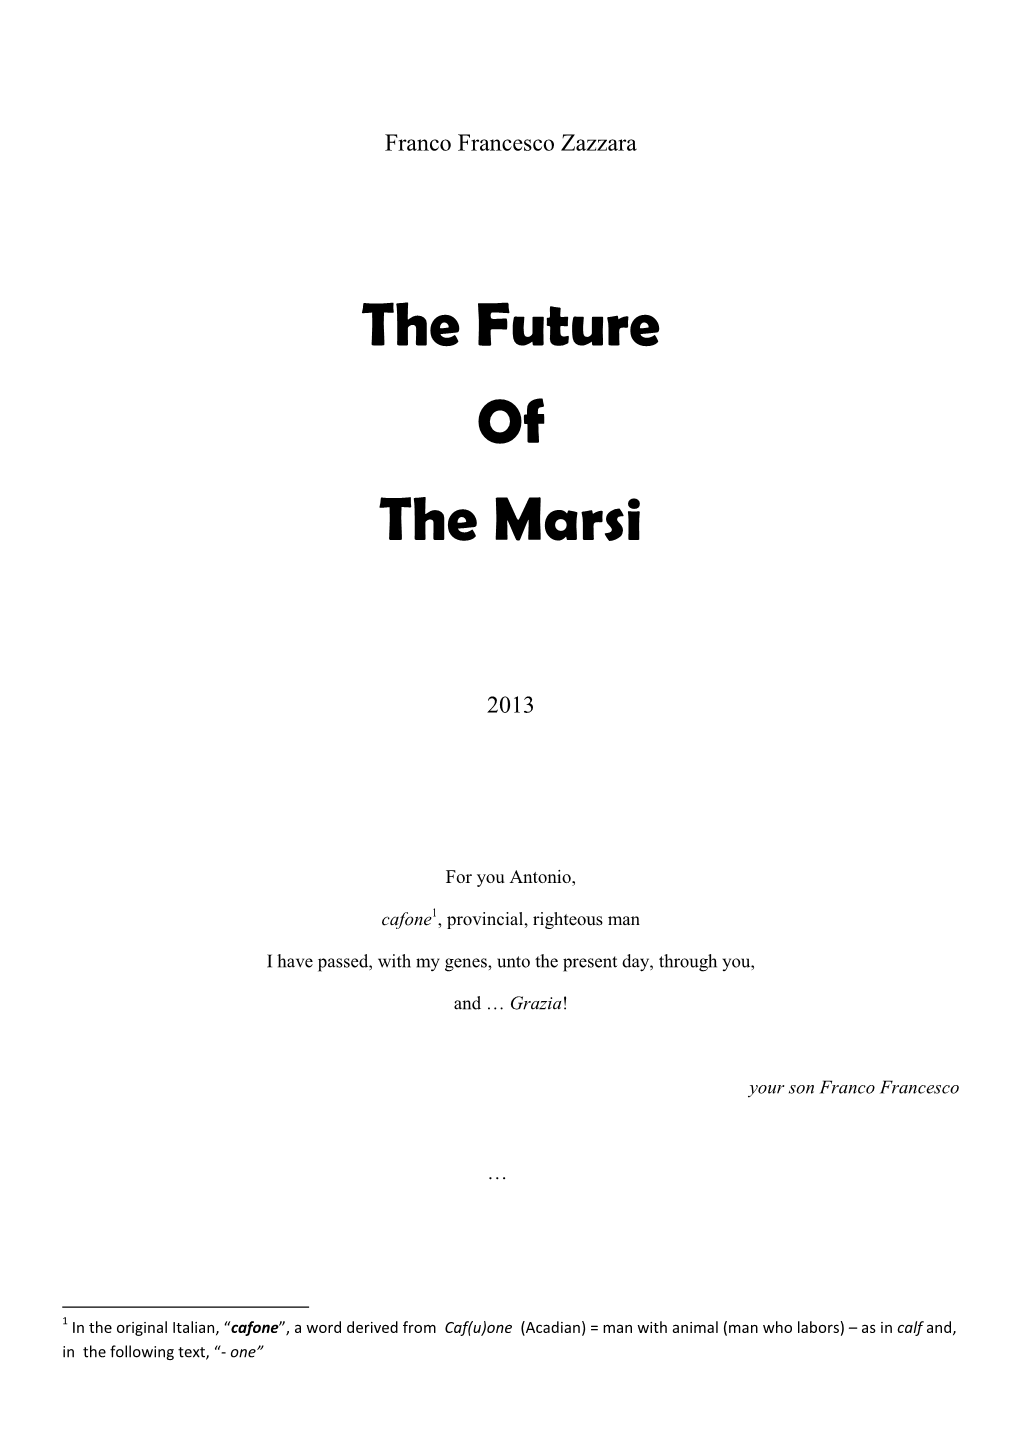 The Future of the Marsi